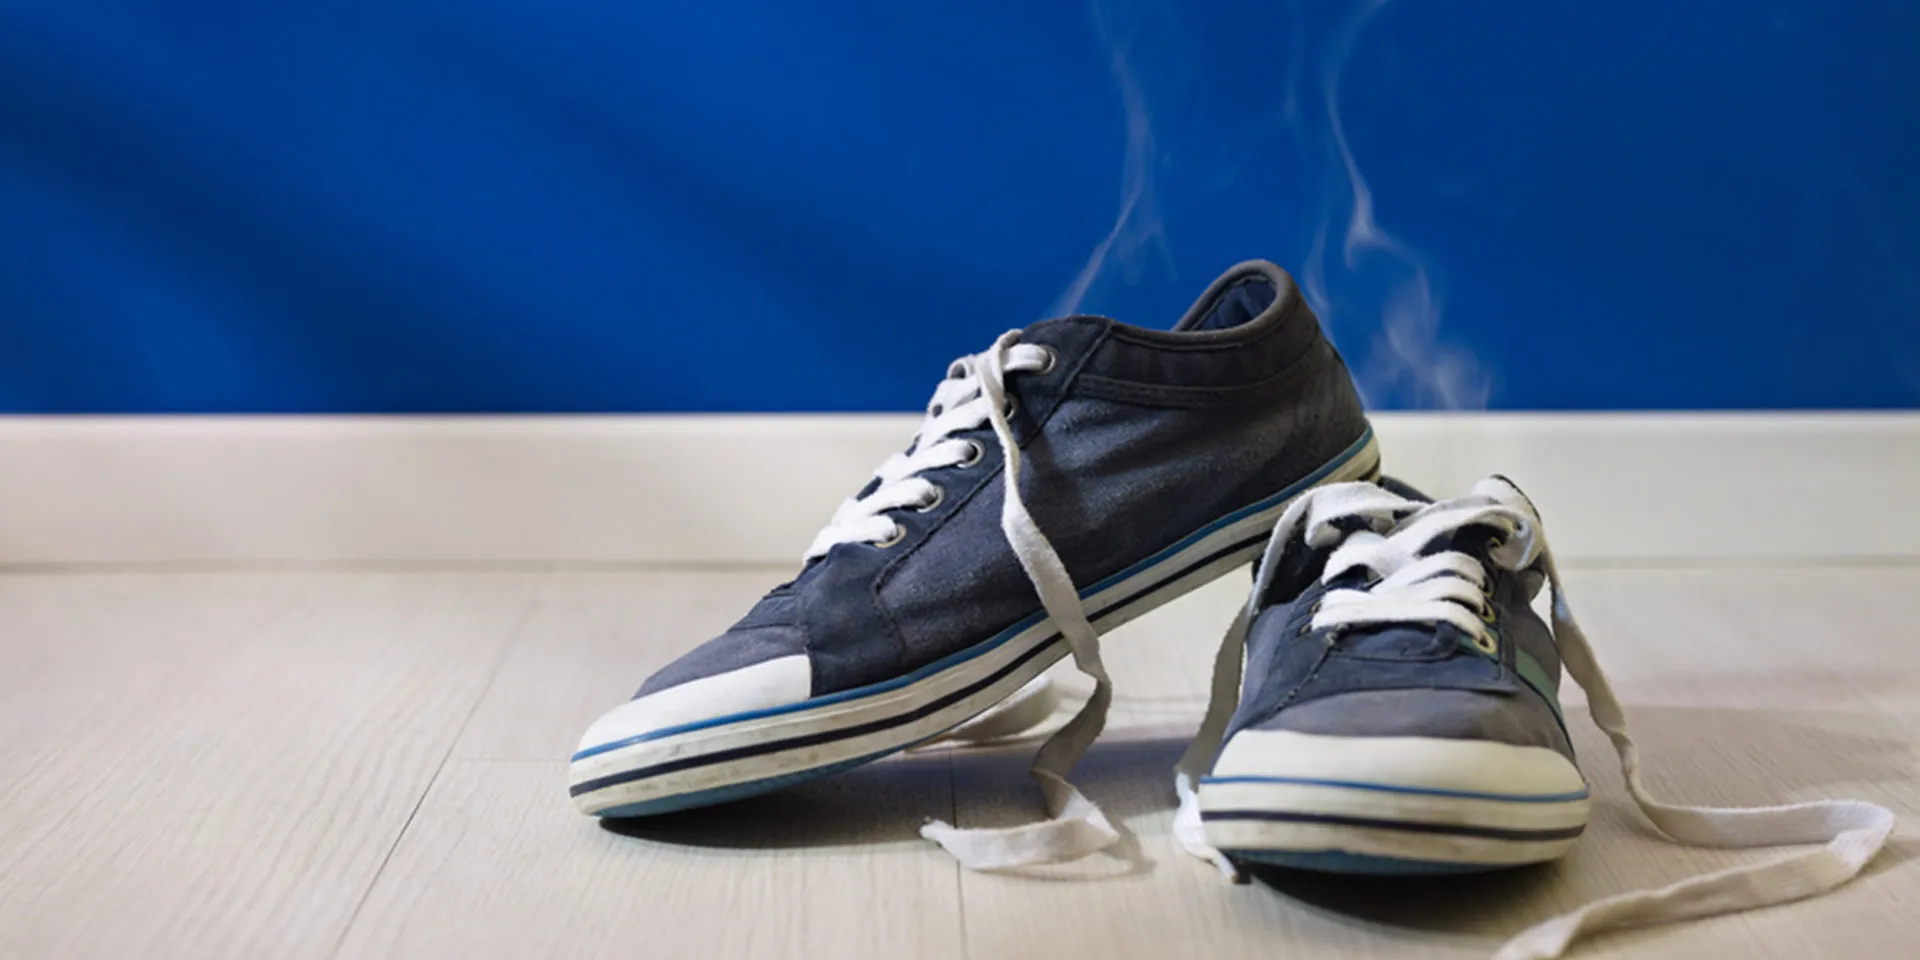 Blogas kvapas sklindantis iš batų